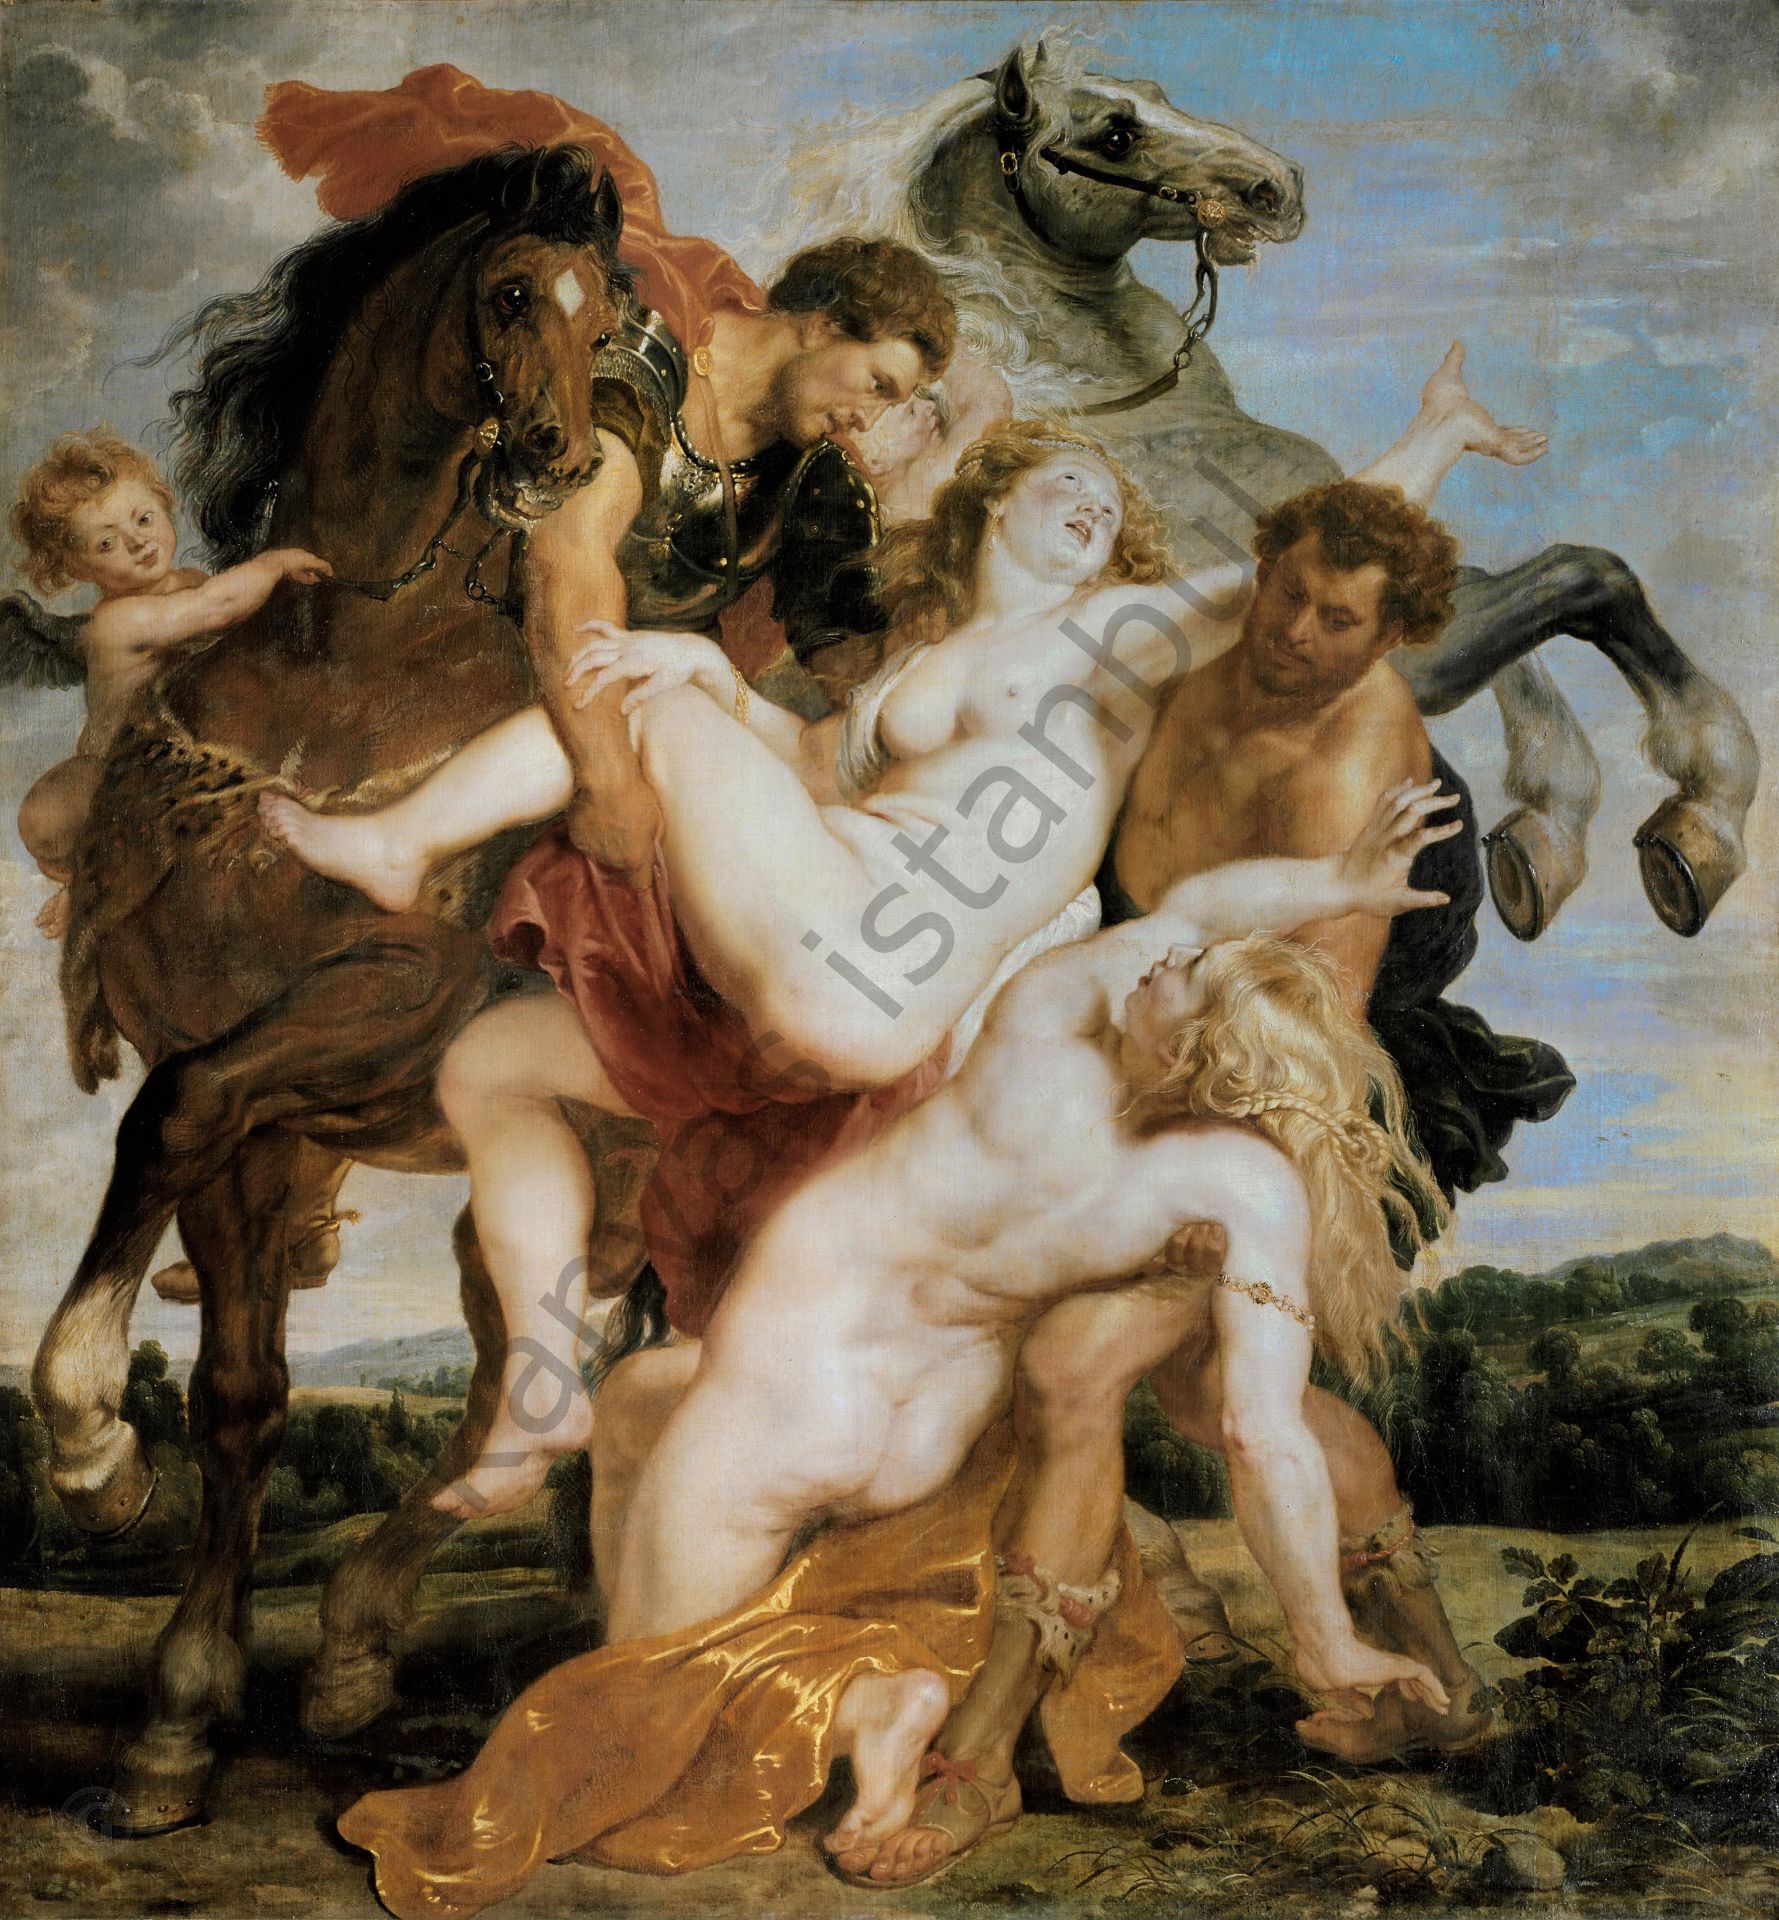 Rape of the Daughters of Leucippus